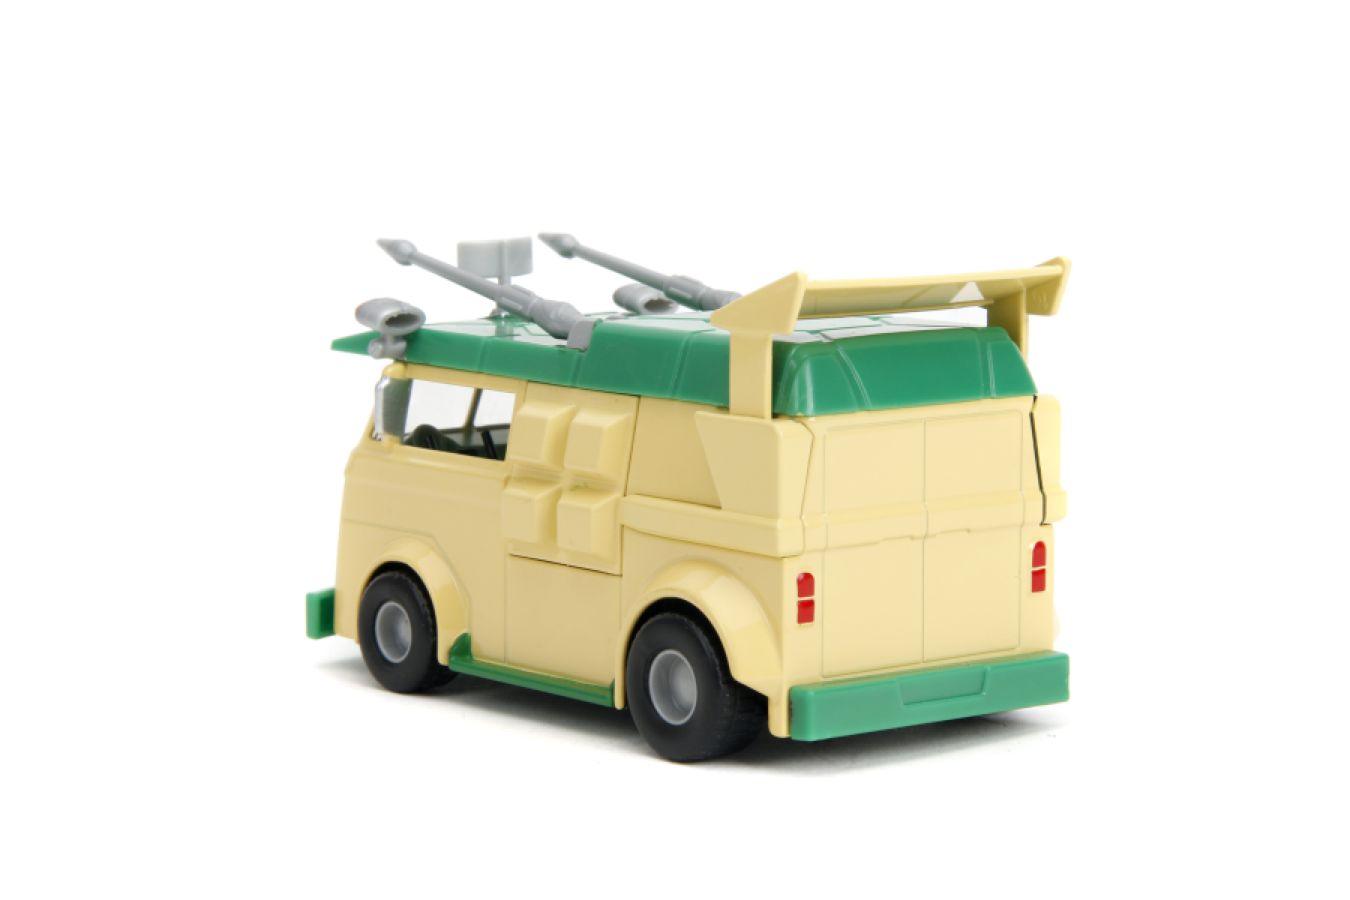 JAD34723 Hollywood Rides - Teenage Mutant Ninja Turtles Party Wagon 1:32 Scale Diecast Vehicle - Jada Toys - Titan Pop Culture